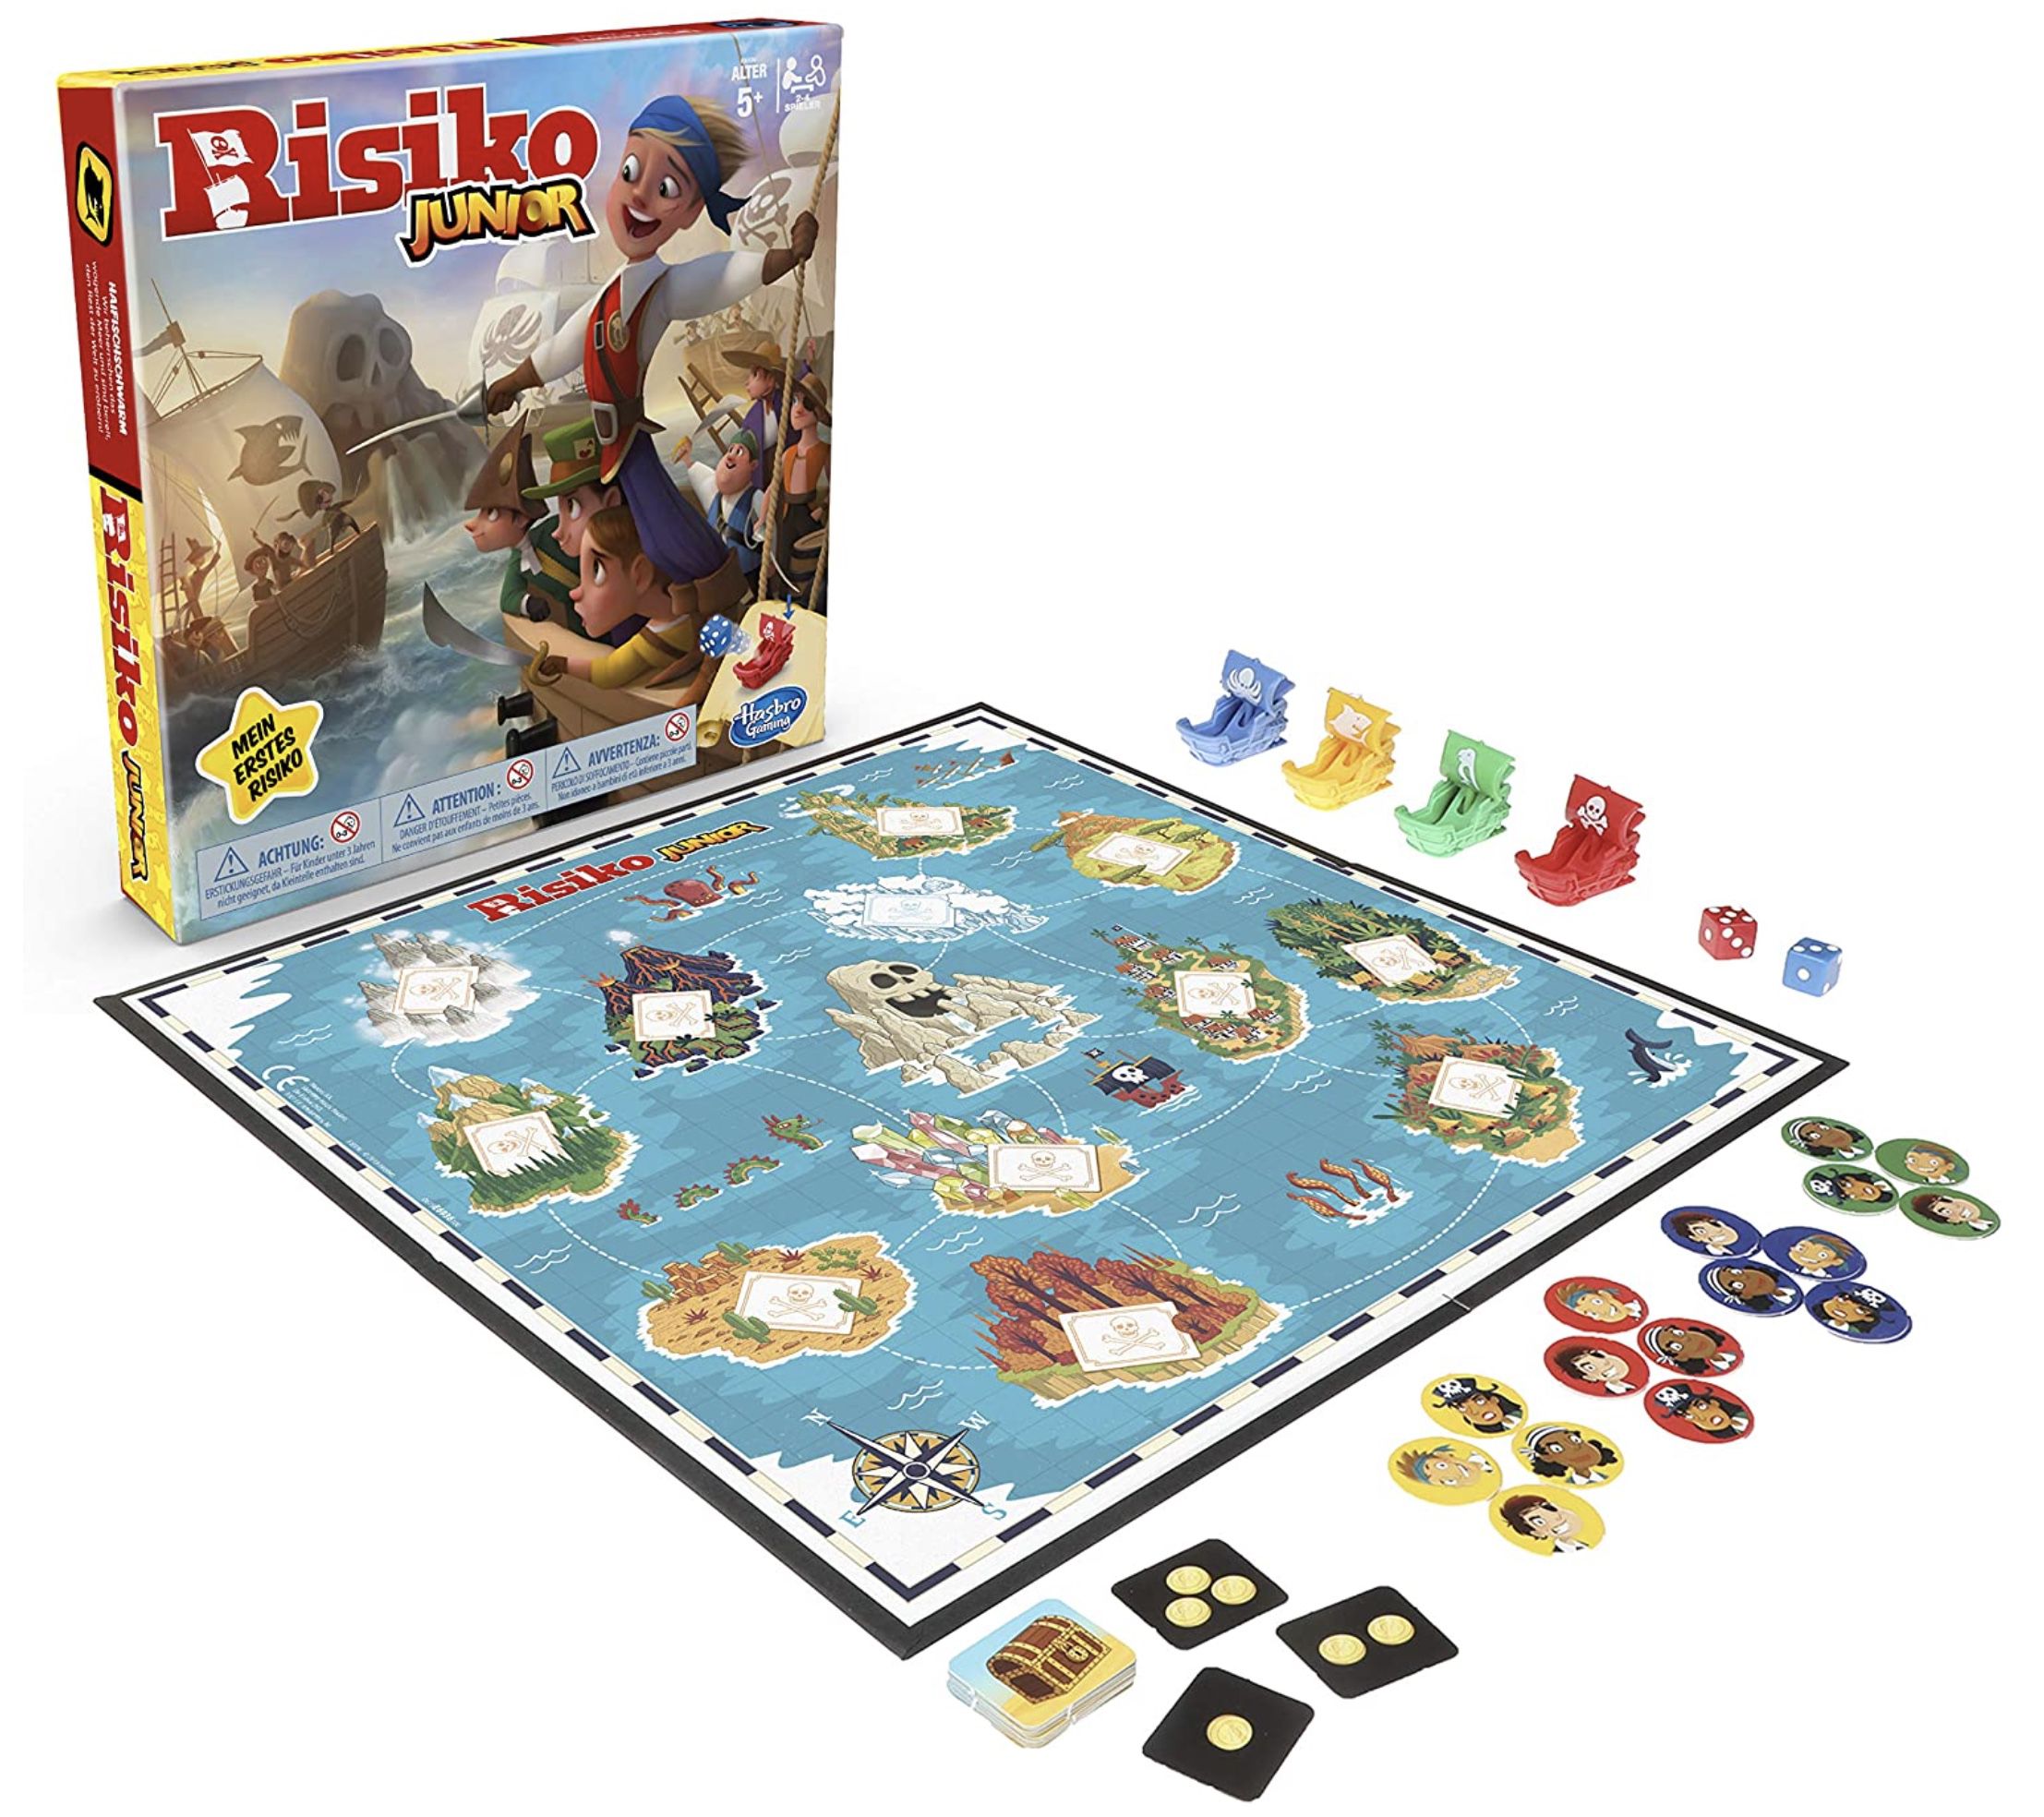 Hasbro Risiko Junior kindergerechtes Strategiespiel für 11,48€ (statt 20€) &#8211; Prime